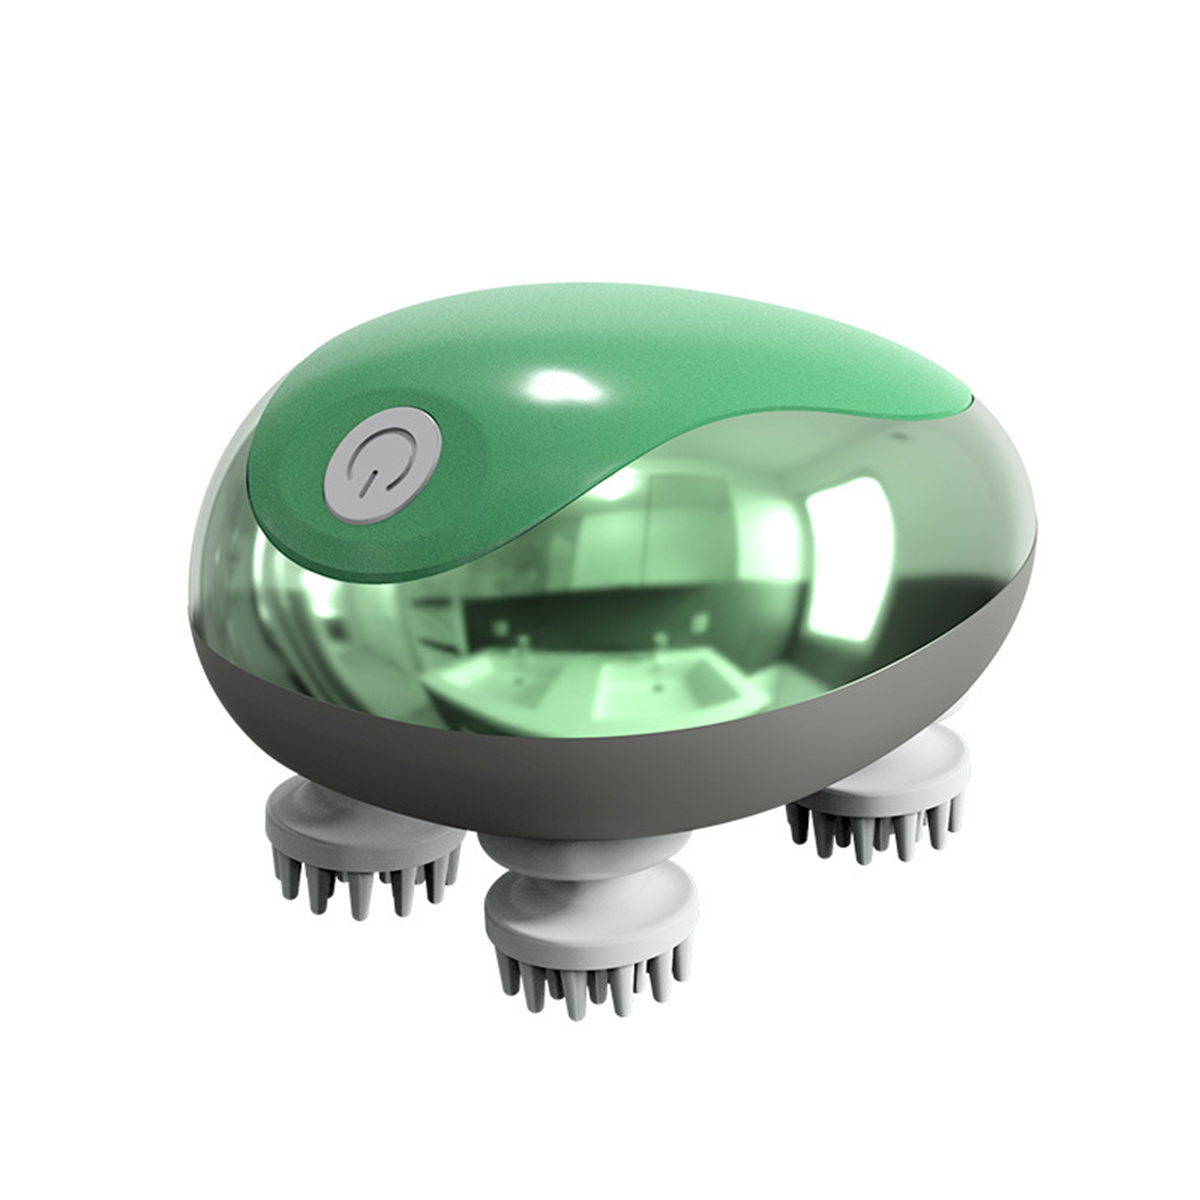 Mini-Haustiermassagegerät wiederaufladbares LACAMAX Grünes Kopfmassagegerät Kopfmassagegerät